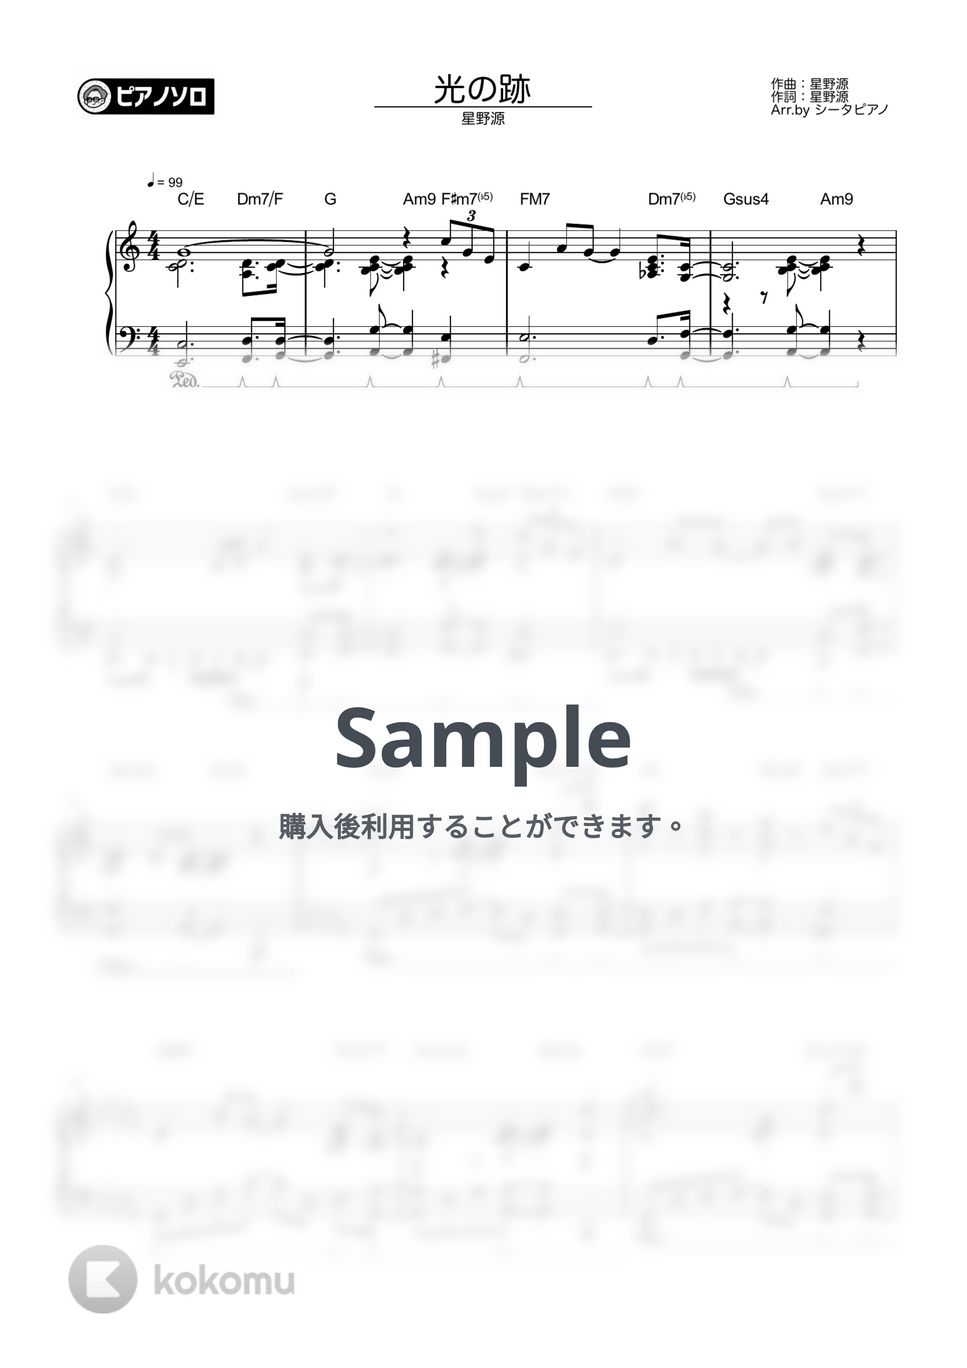 星野源 - 光の跡 by シータピアノ